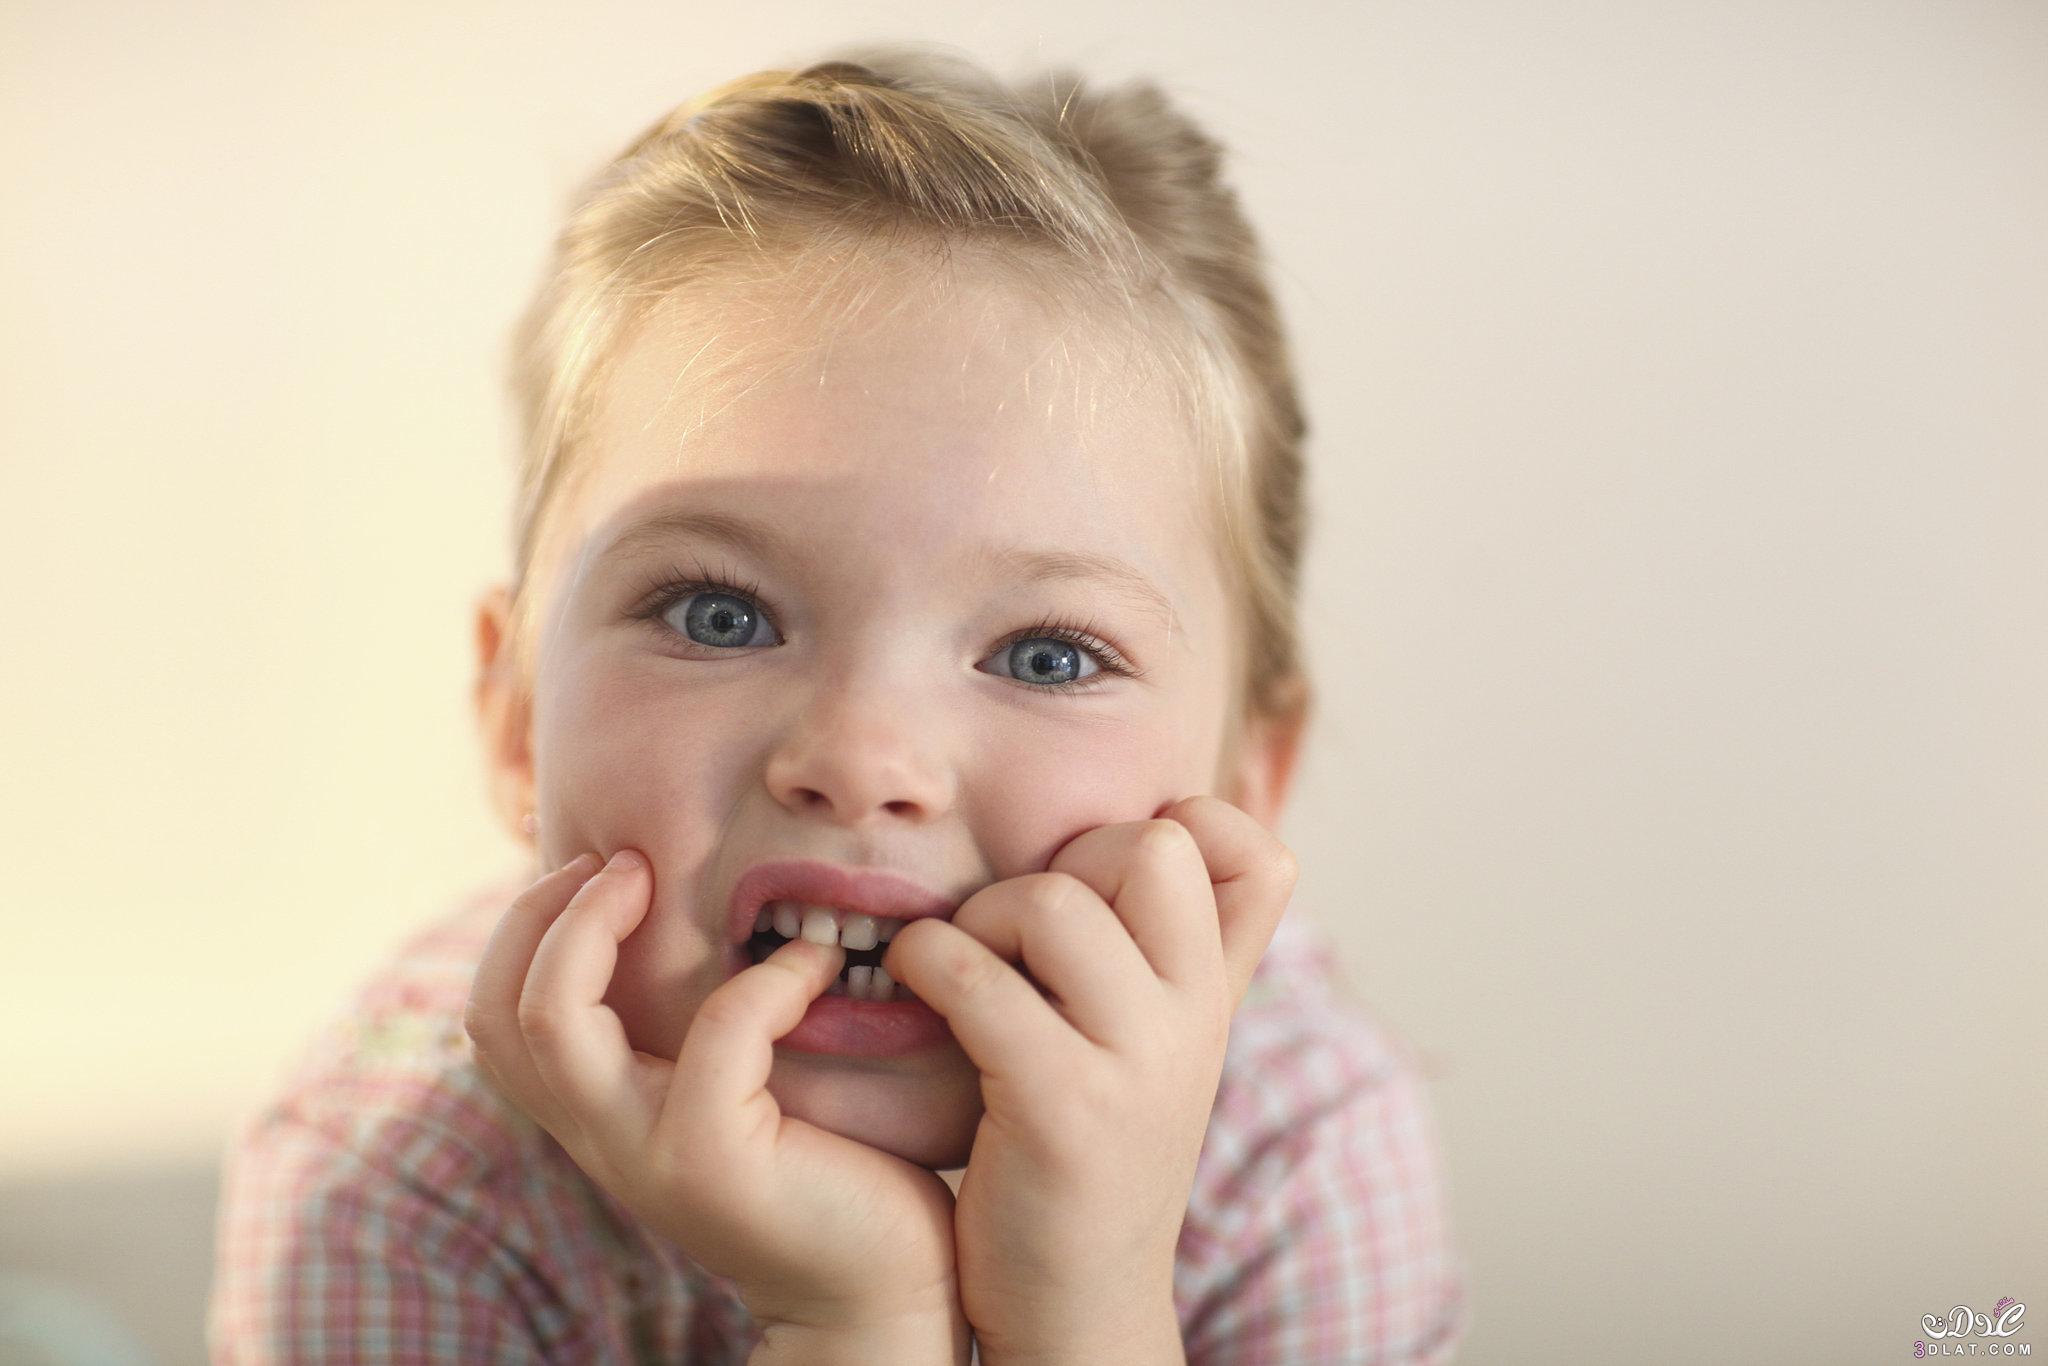 طرق التخلص من عادة قضم الأظافر عند الاطفال, كيفية التخلص من عادة قضم الأظافر عند الاطفال